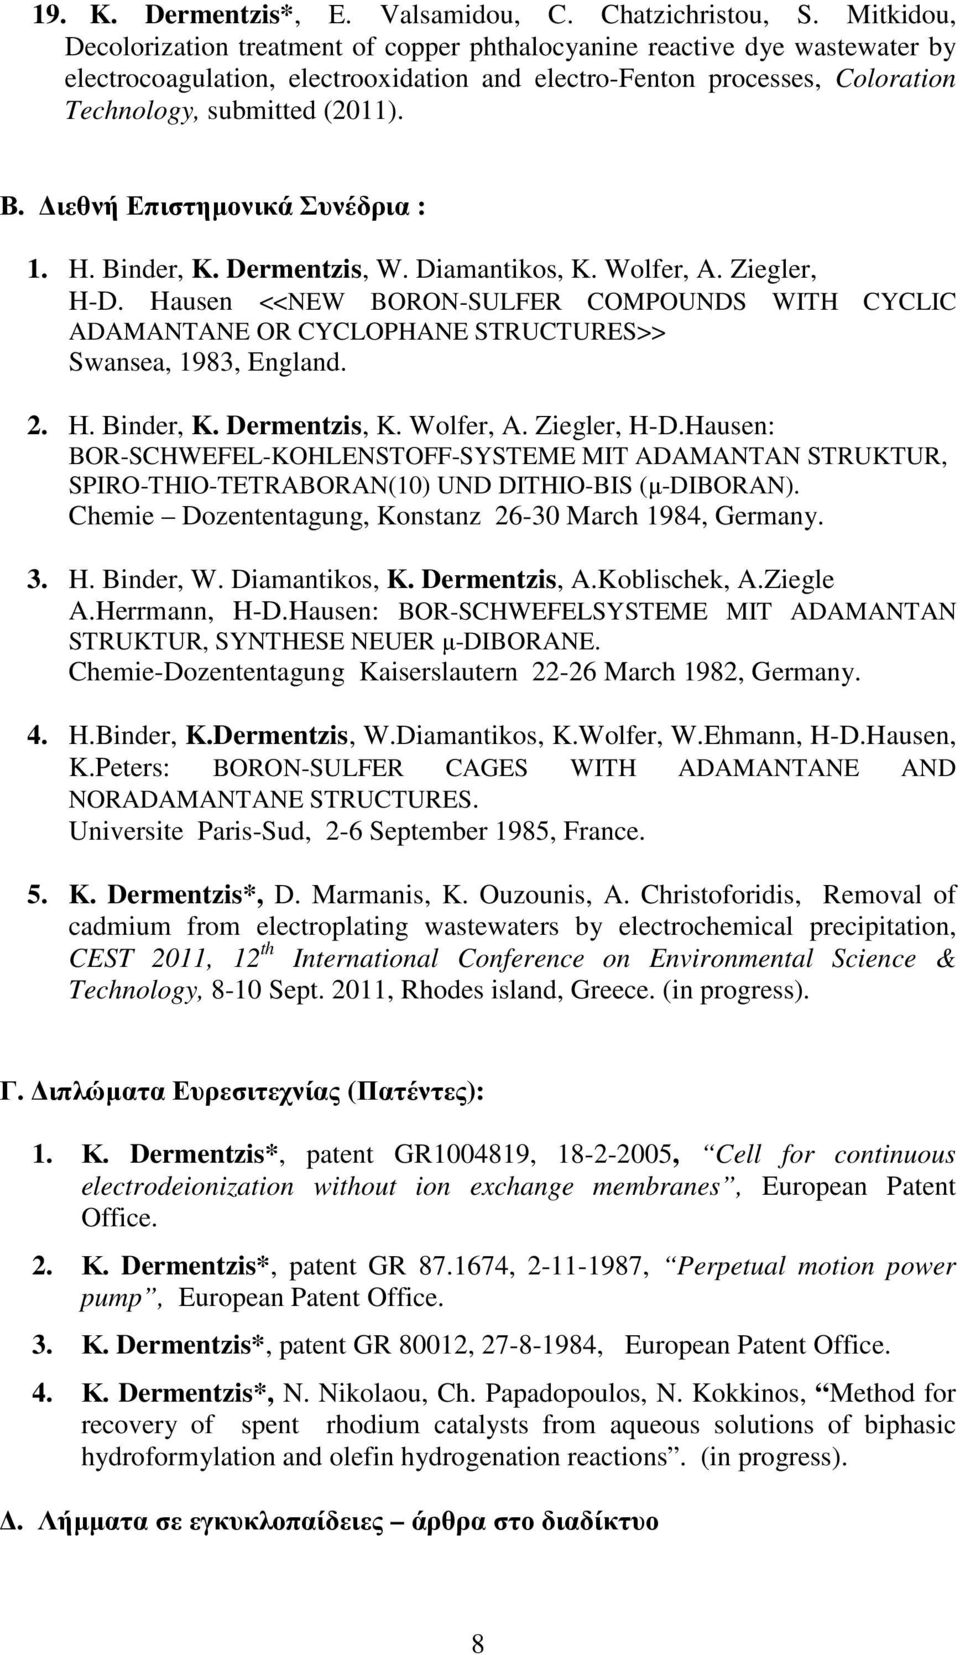 ιεθνή Επιστηµονικά Συνέδρια : 1. H. Binder, K. Dermentzis, W. Diamantikos, K. Wolfer, A. Ziegler, H-D.